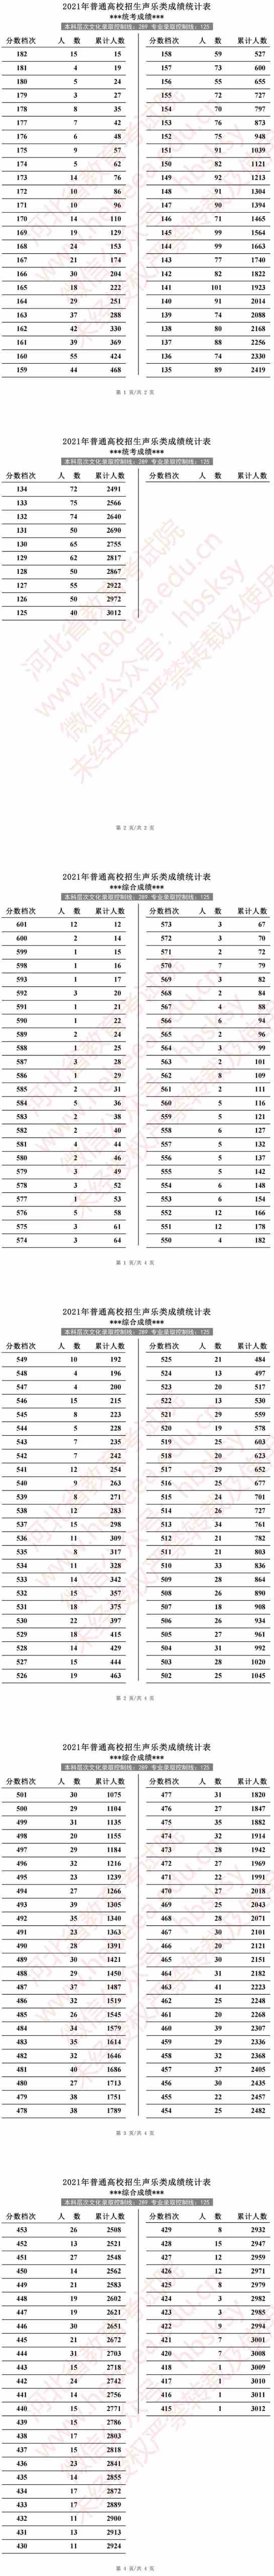 2021年河北省普通高校招生声乐类成绩统计表(专业成绩·综合成绩).jpg